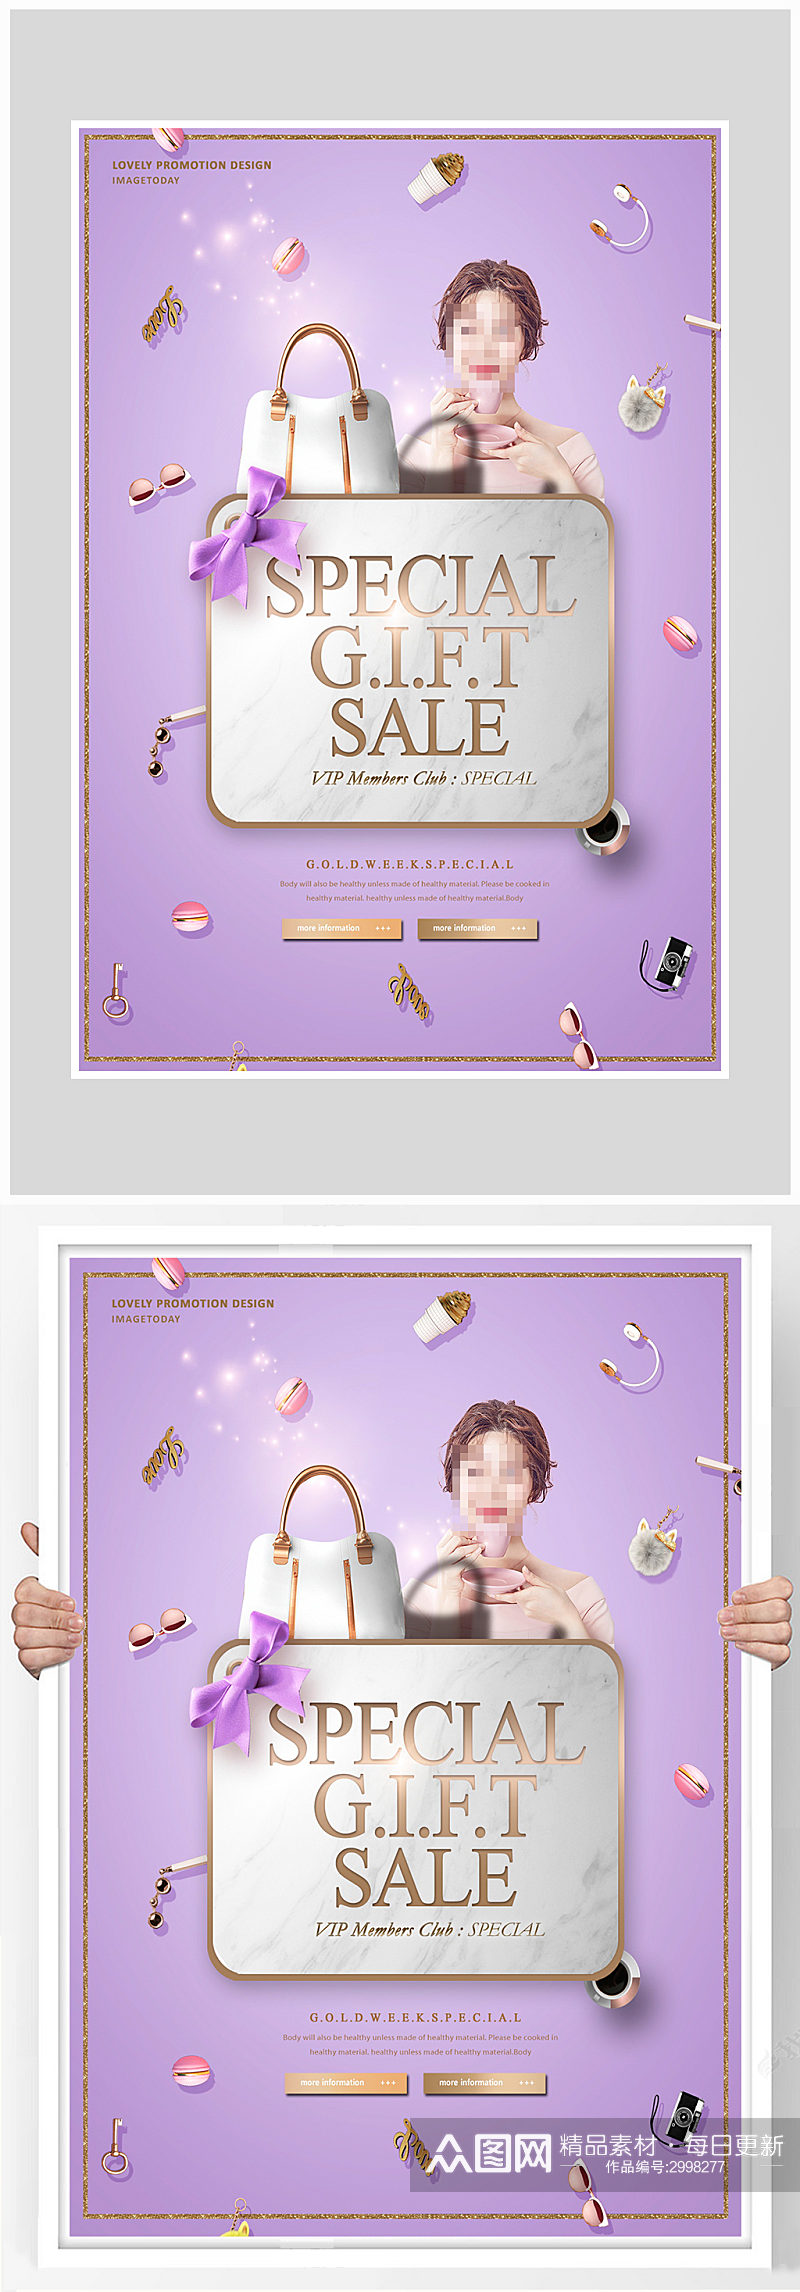 紫色唯美情人节促销海报设计素材